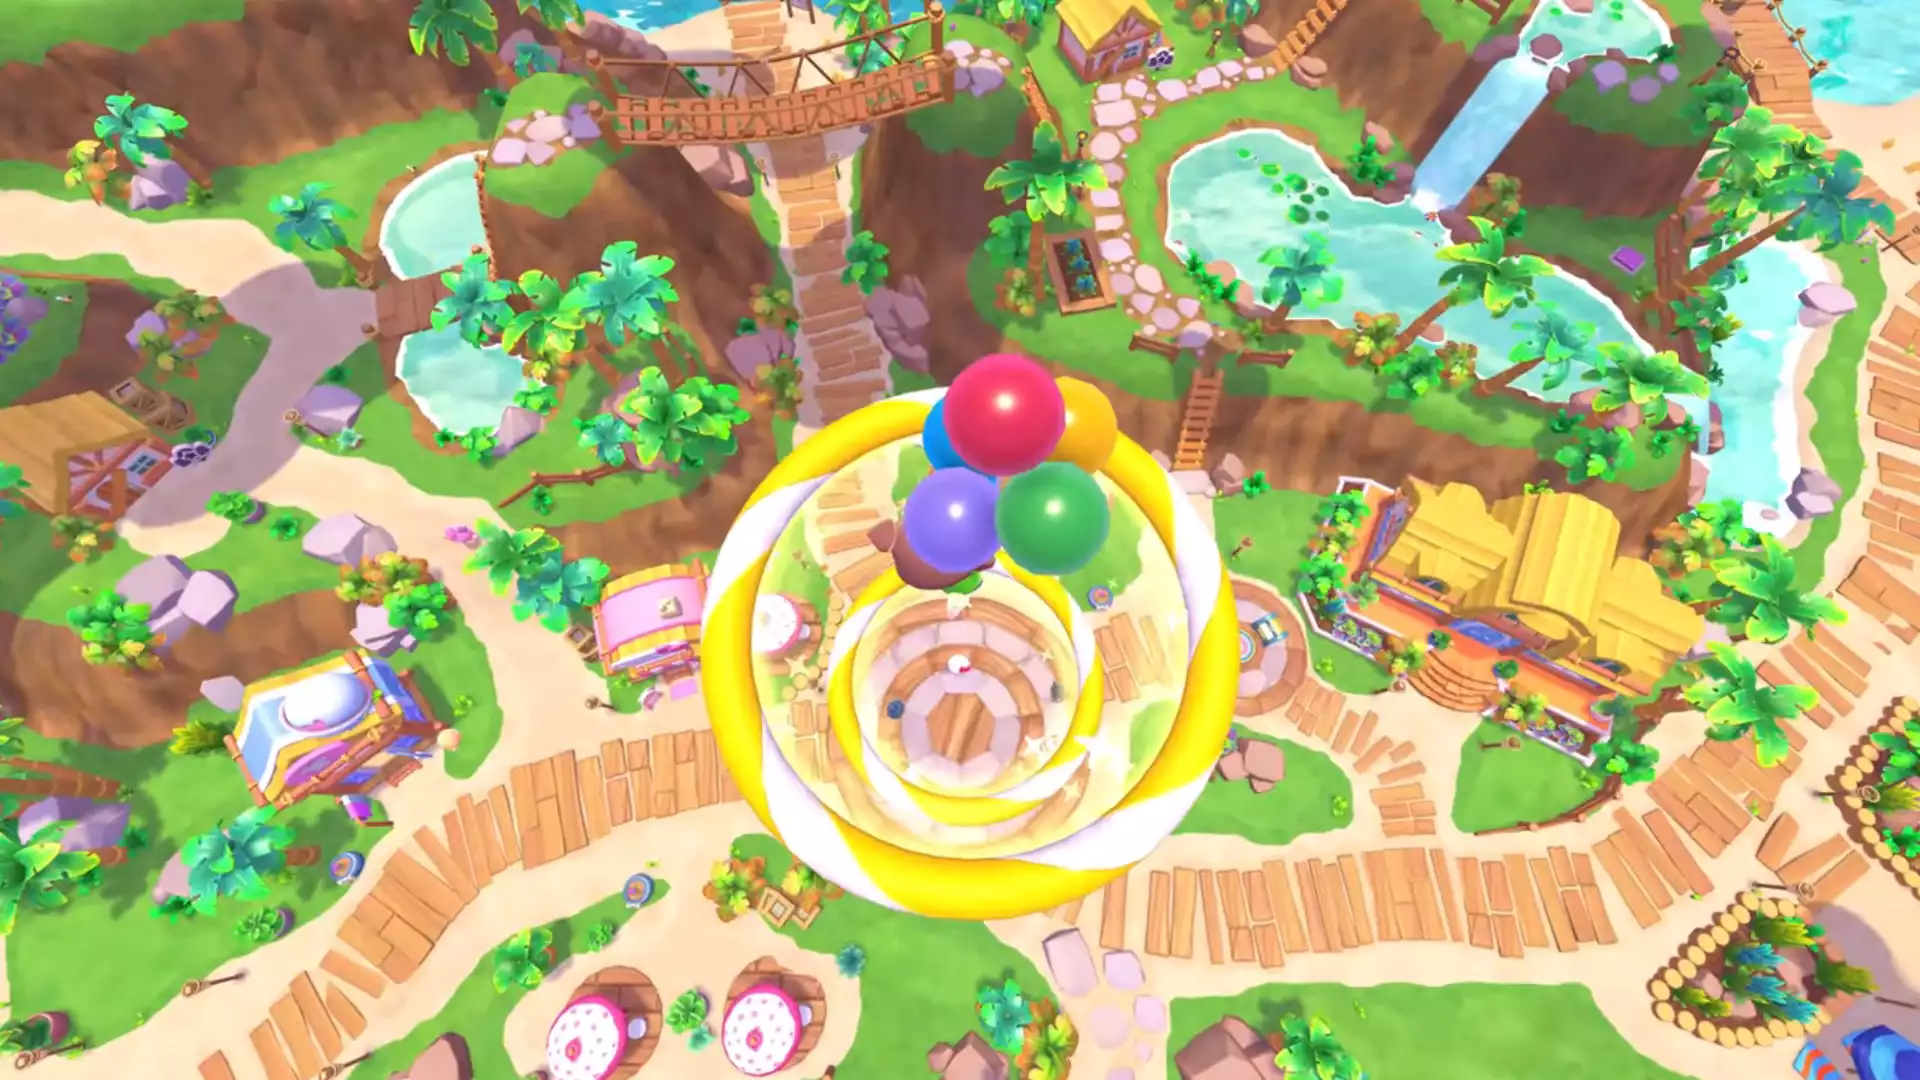 Hello Kitty Island Adventure Cinna Bloom: Where to Find Cinna